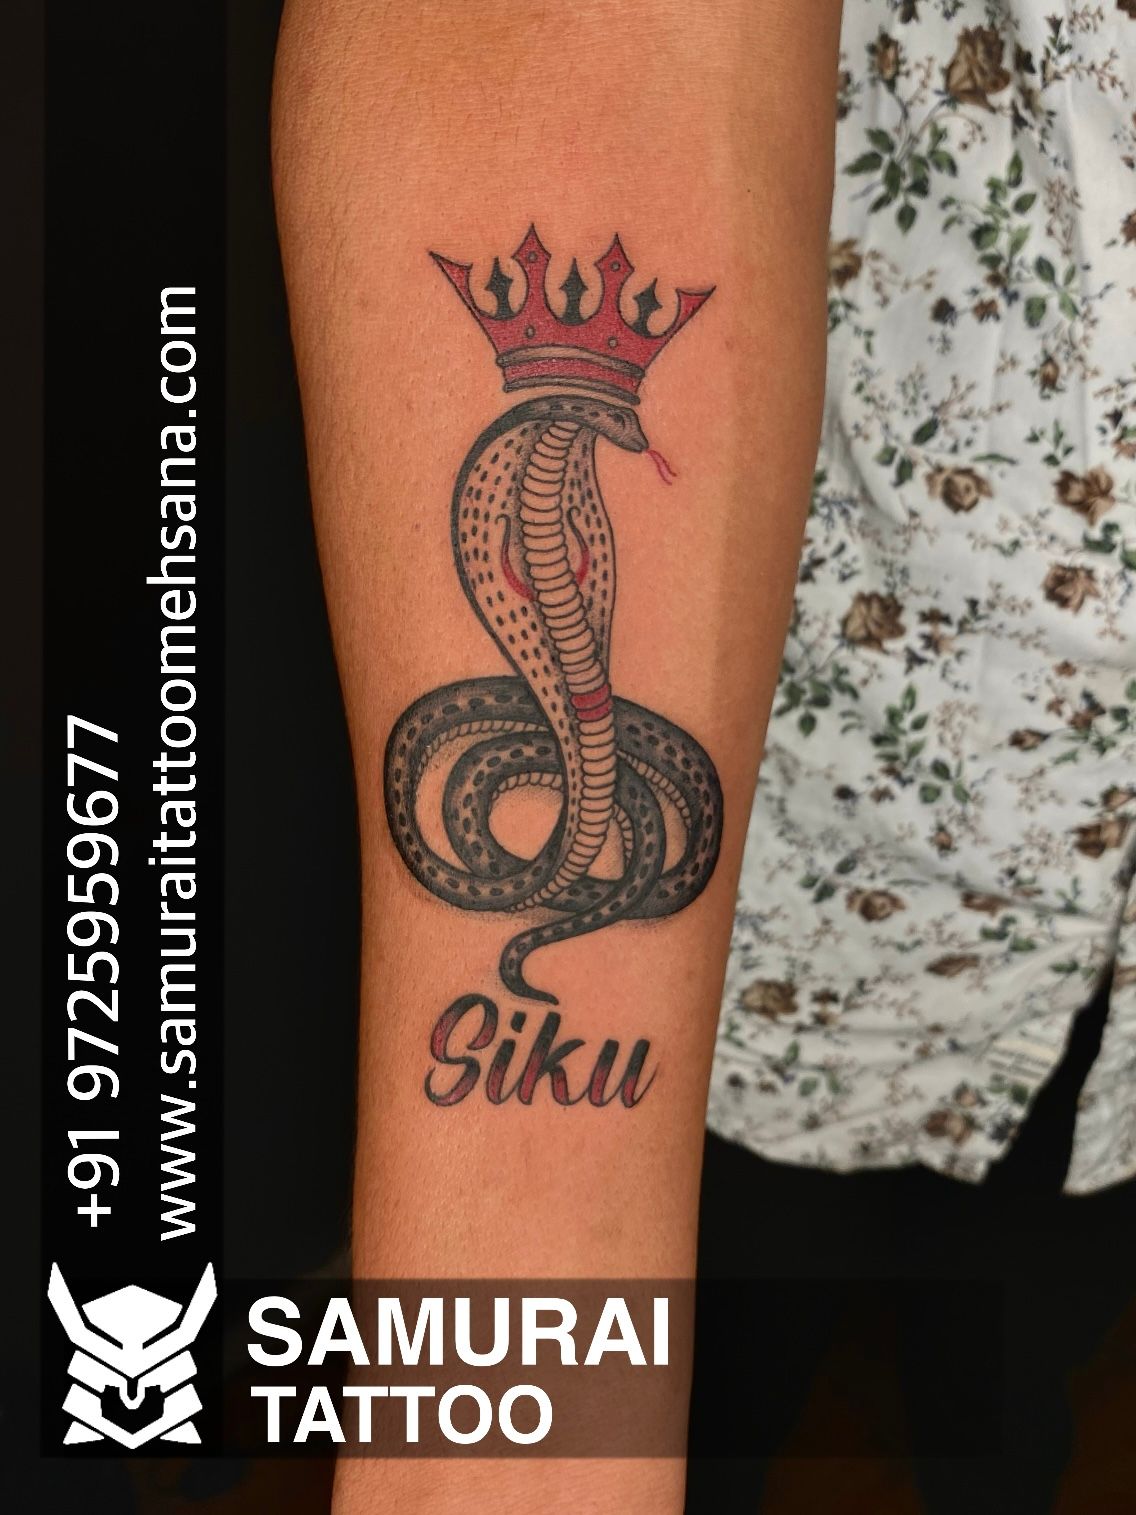 Tattoo uploaded by Samurai Tattoo mehsana  Jay goga tattoo Goga maharaj  tattoo Goga tattoo Goga maharaj nu tattoo  Tattoodo